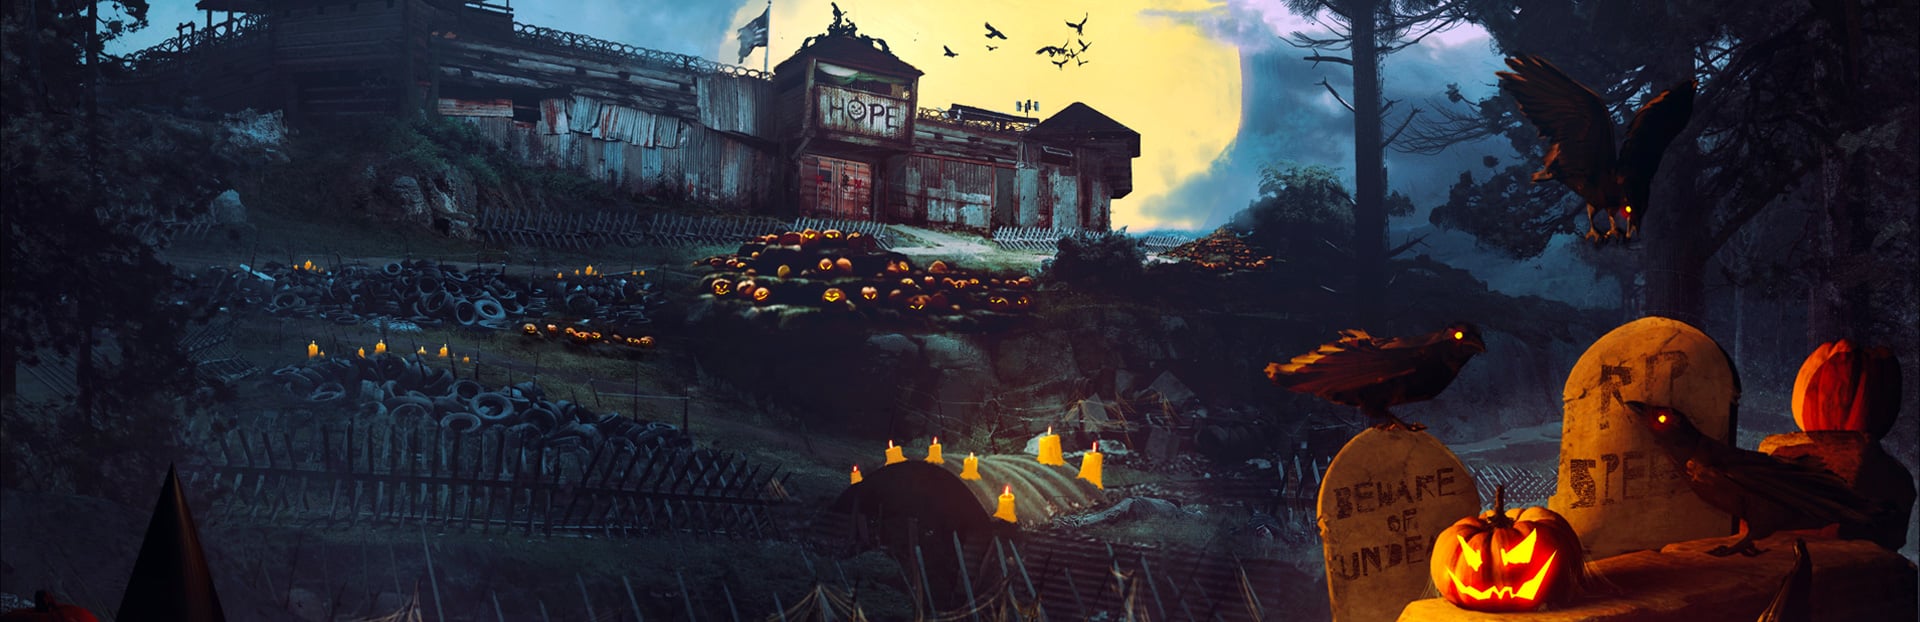 Back 4 Blood tendrá una actualizacion que incluirá contenido temático de Halloween, GamersRD